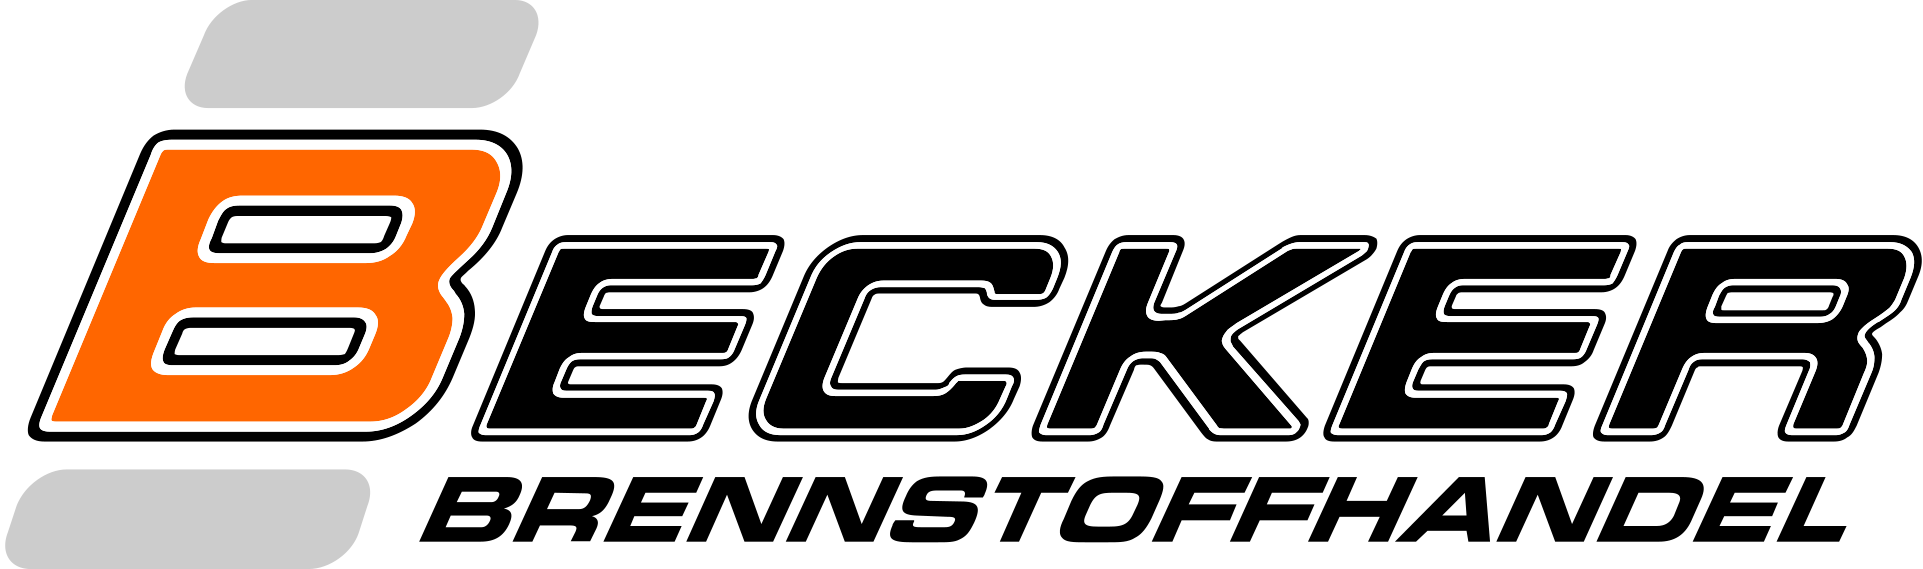 Logo von Becker Brennstoffhandel e.K.